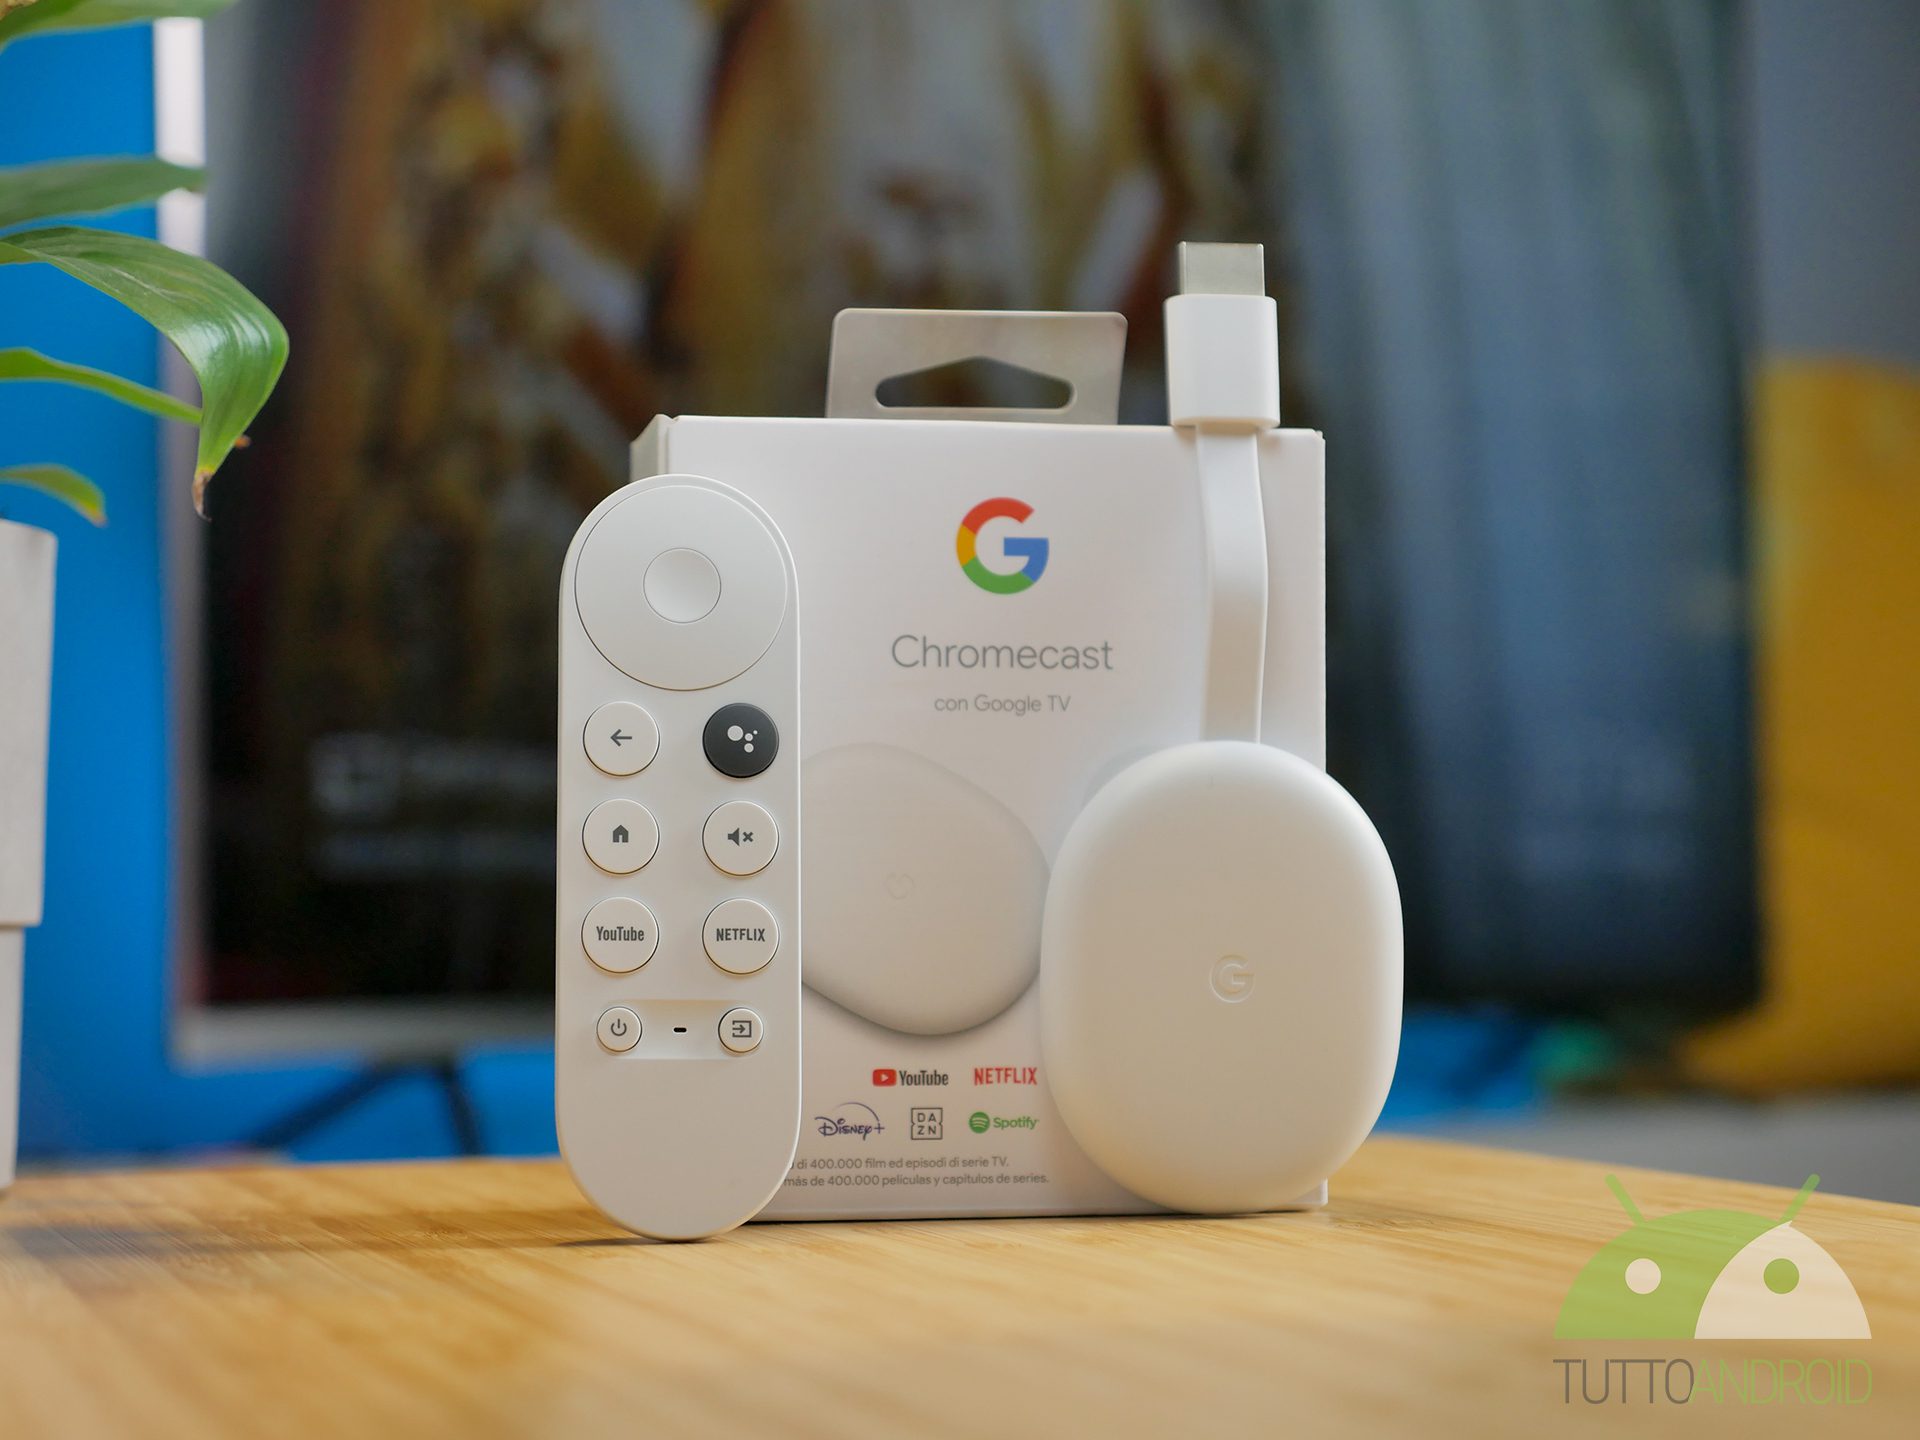 سيسمح لك Chromecast مع Google TV الآن بالتحكم في أمن المنزل 1